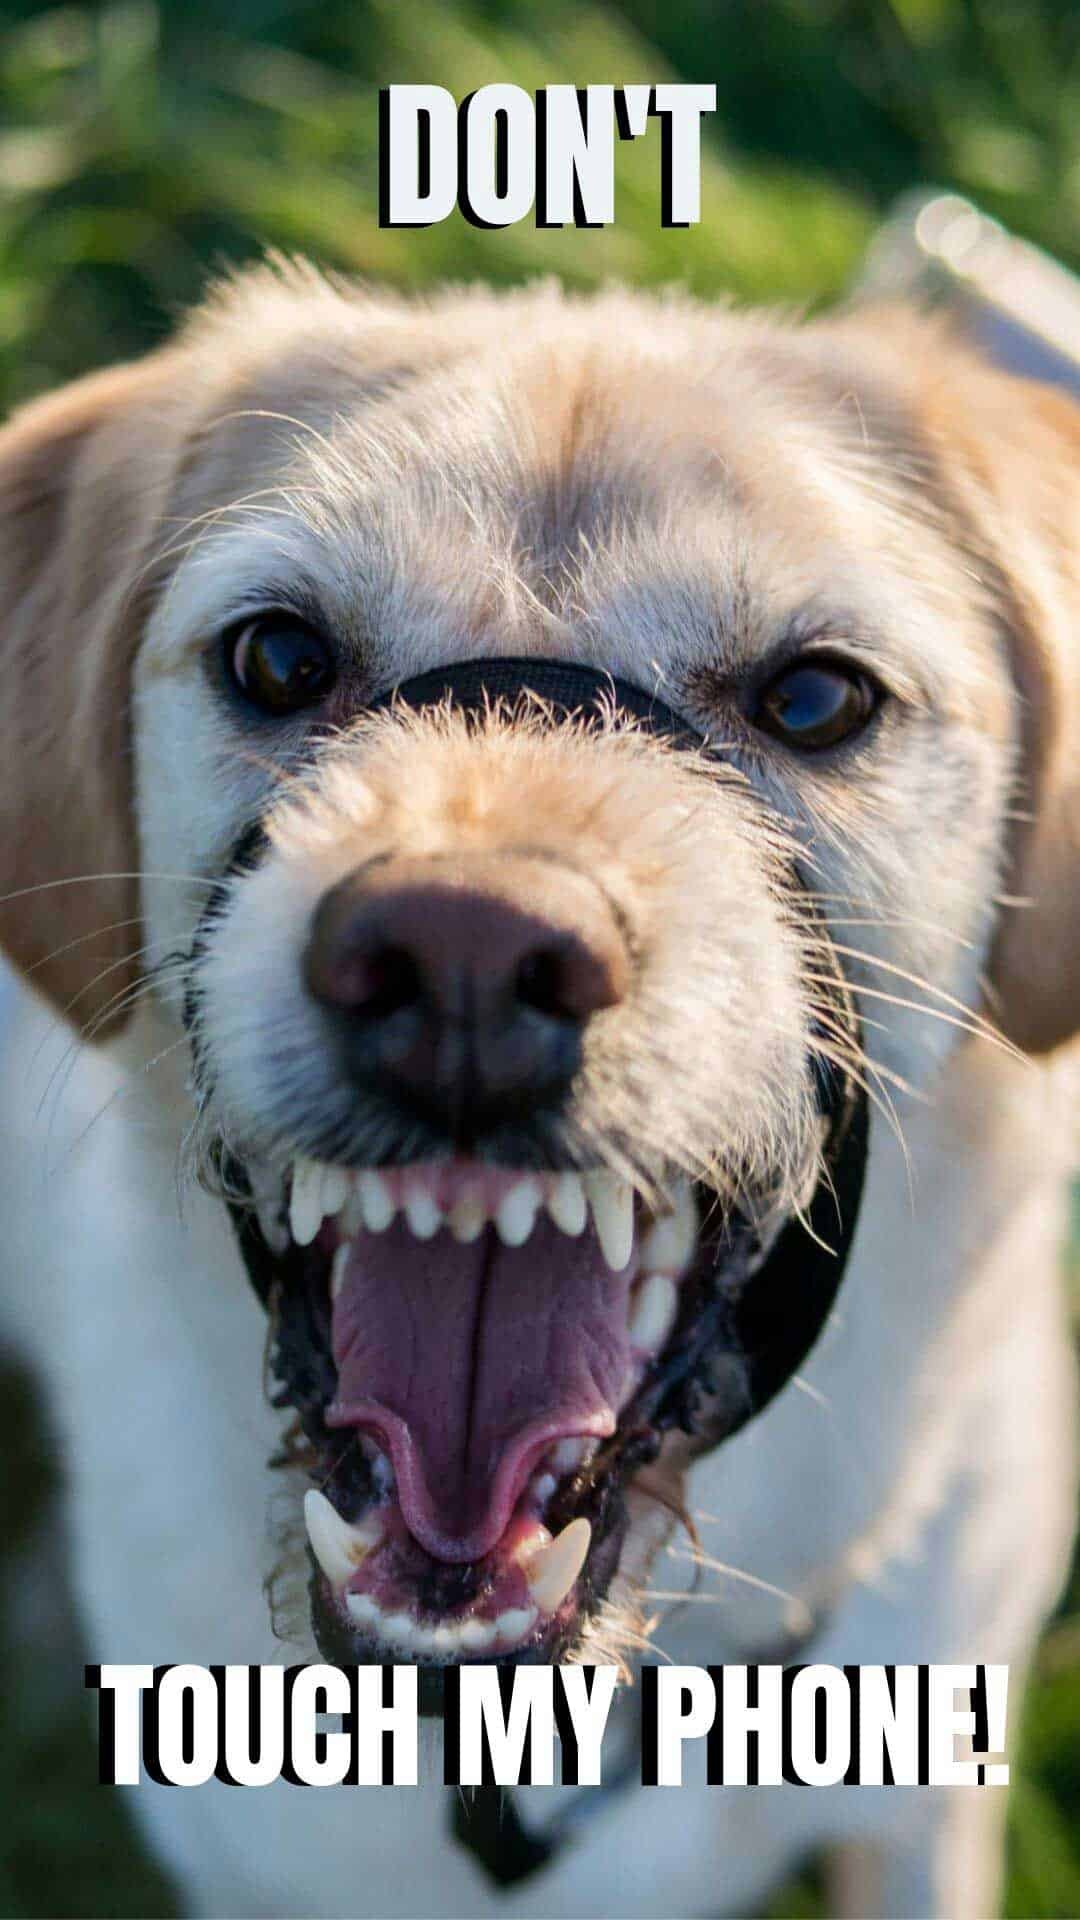 angry cute dog